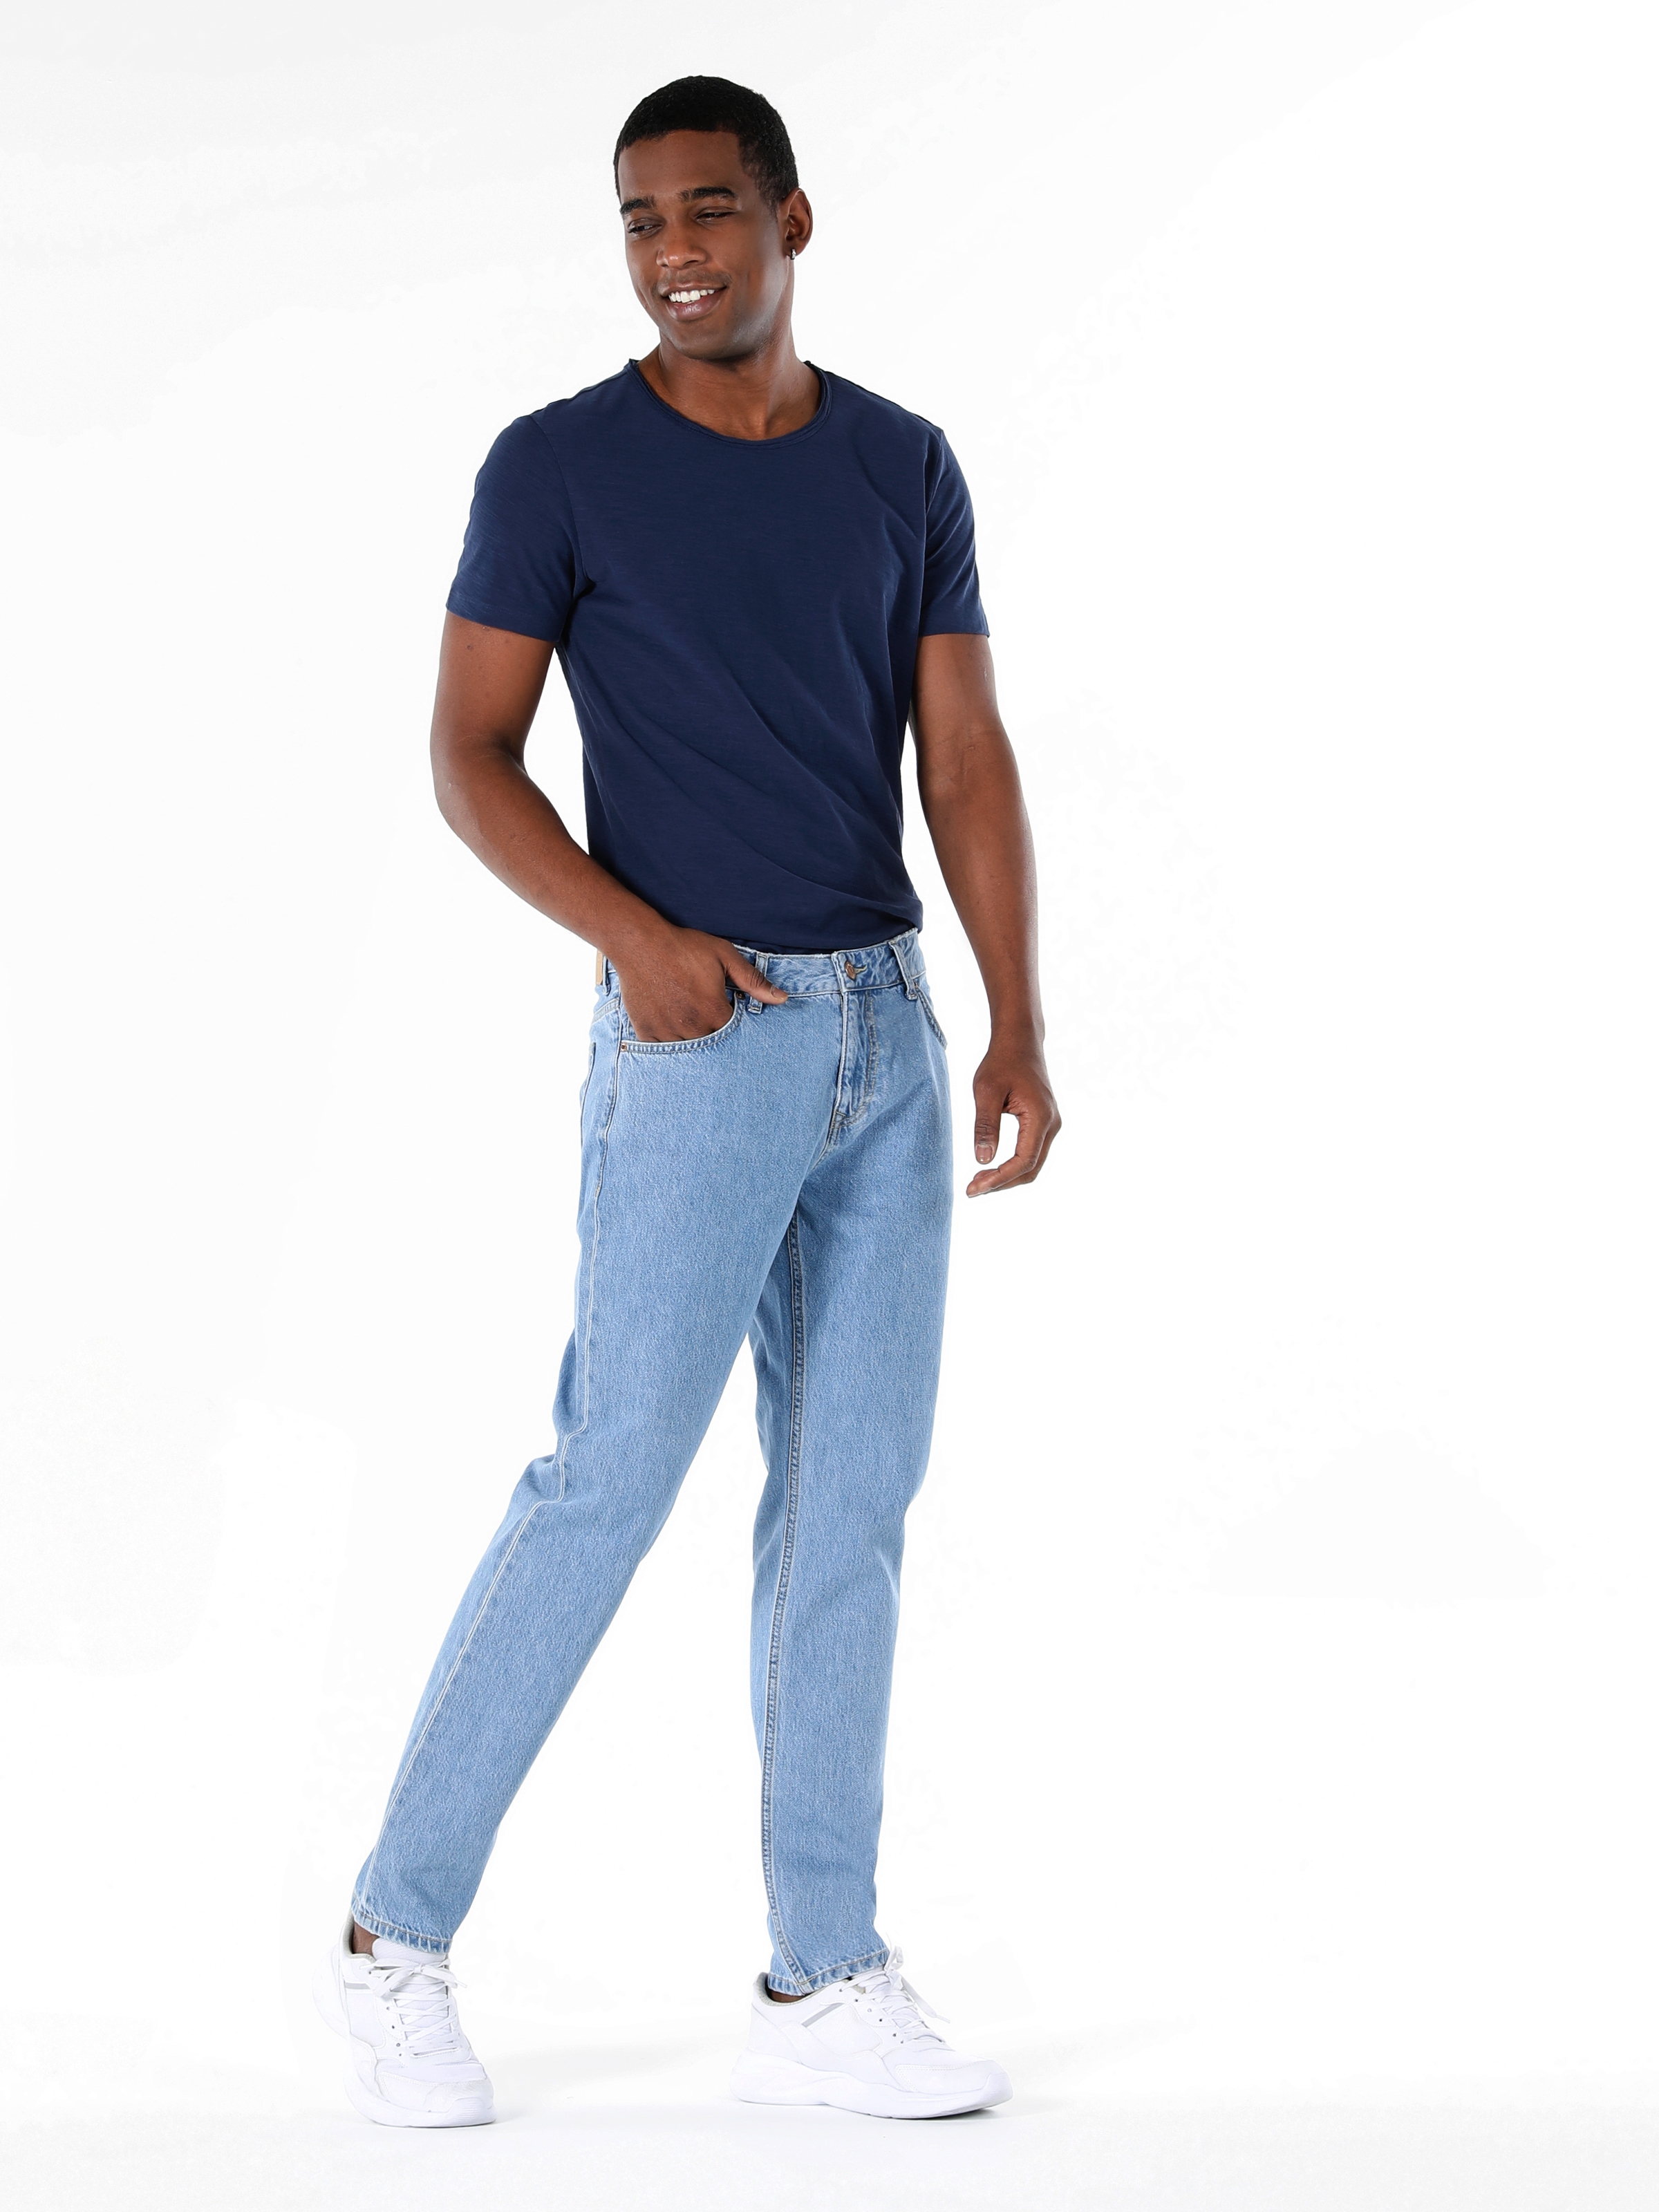 Afficher les détails de 067 Jack Pantalon En Jean Bleu Pour Homme, Taille Moyenne, Coupe Régulière, Jambe Droite